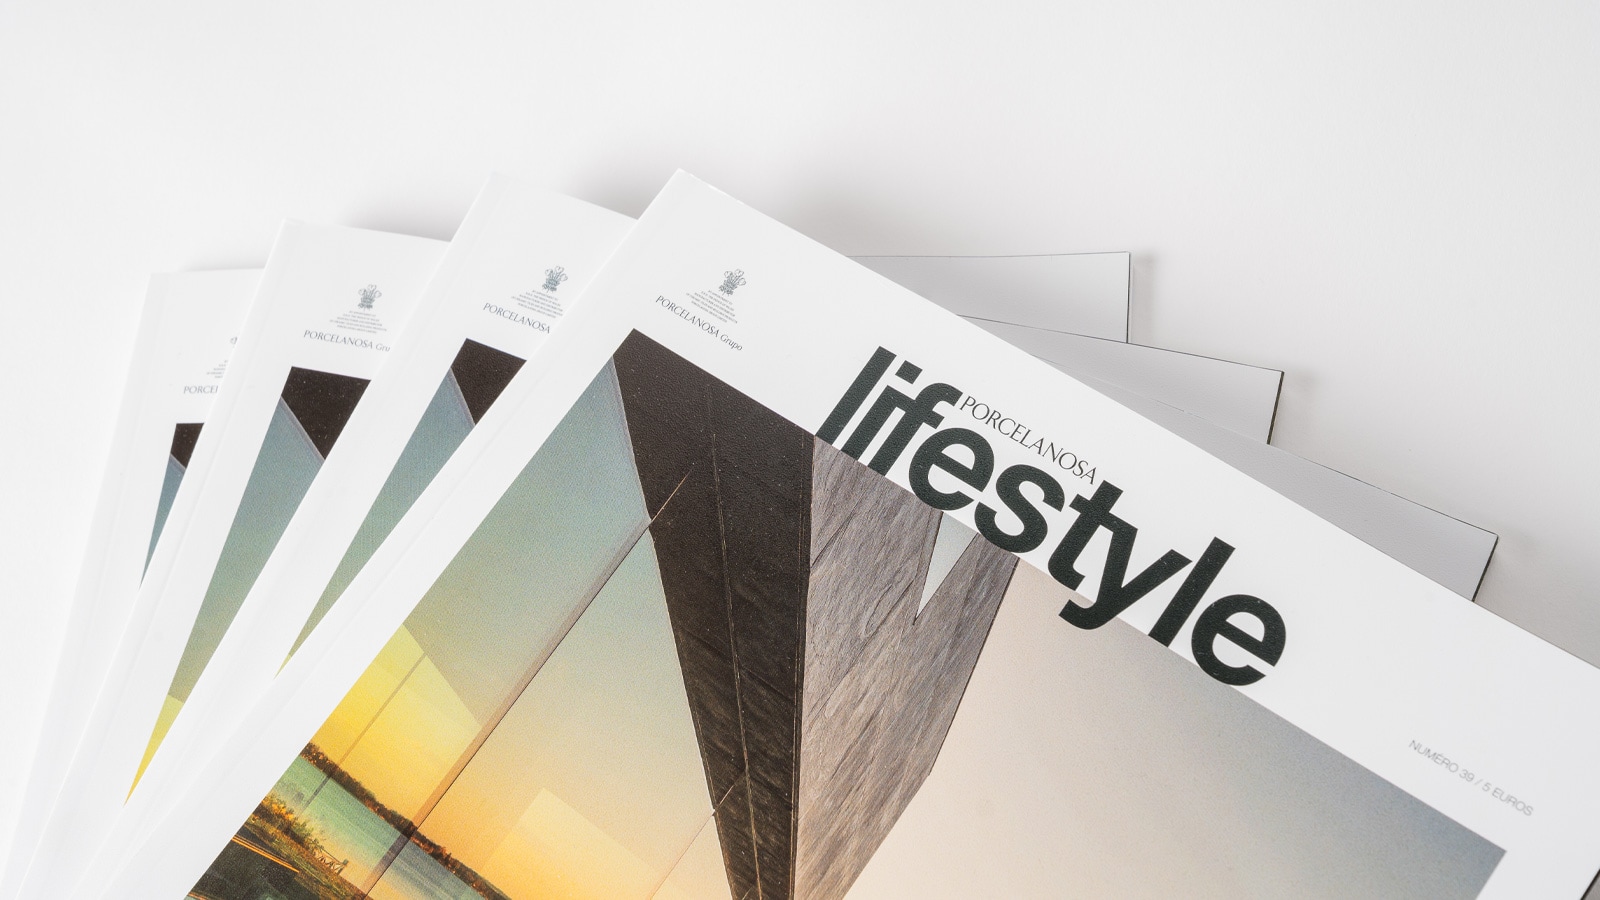 La rivista 'Lifestyle' porta sulle sue pagine i design di Calatrava e Lázaro Rosa-Violán